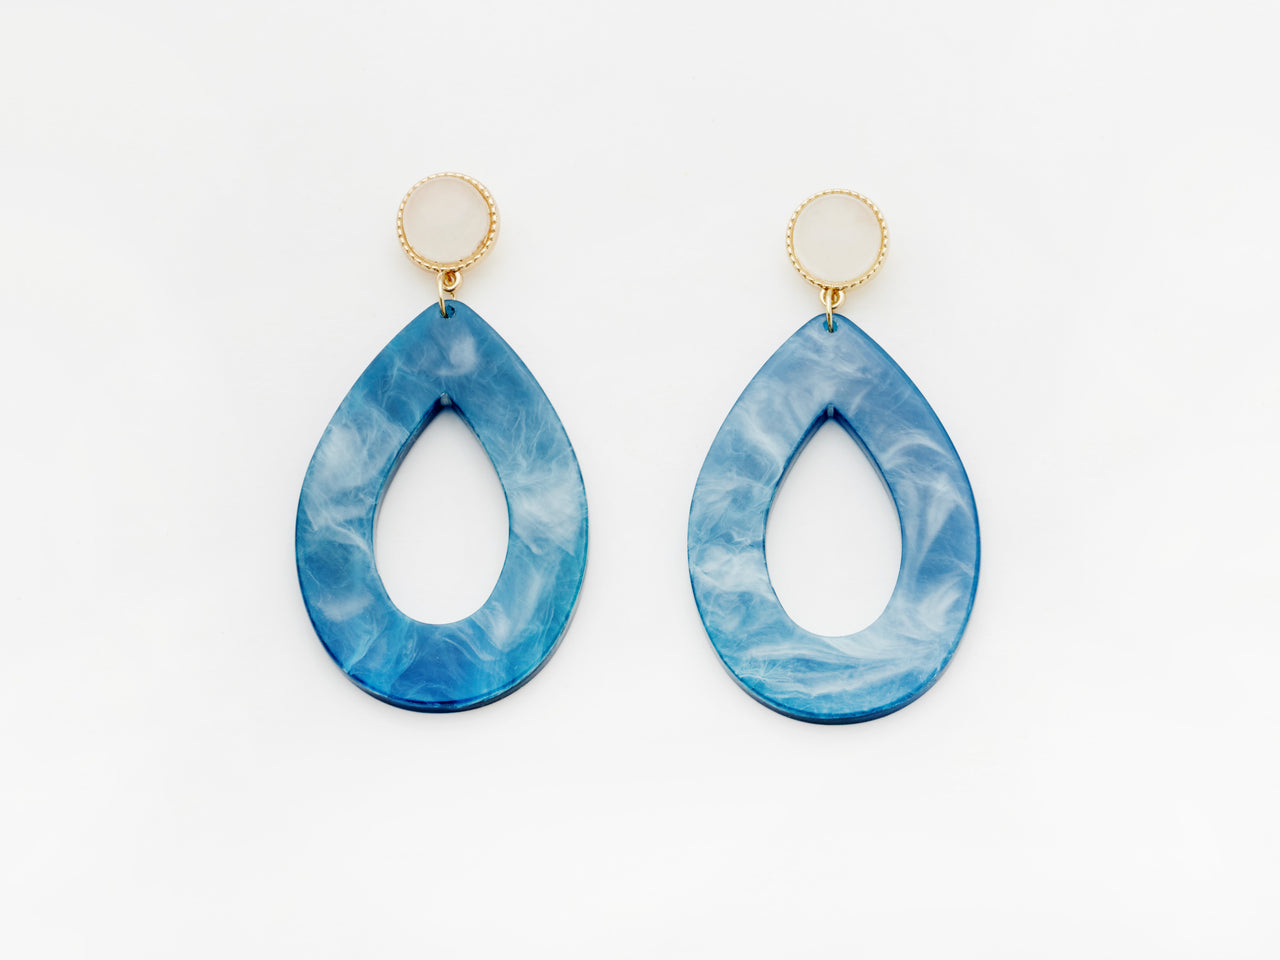 Carine Earrings in Blue